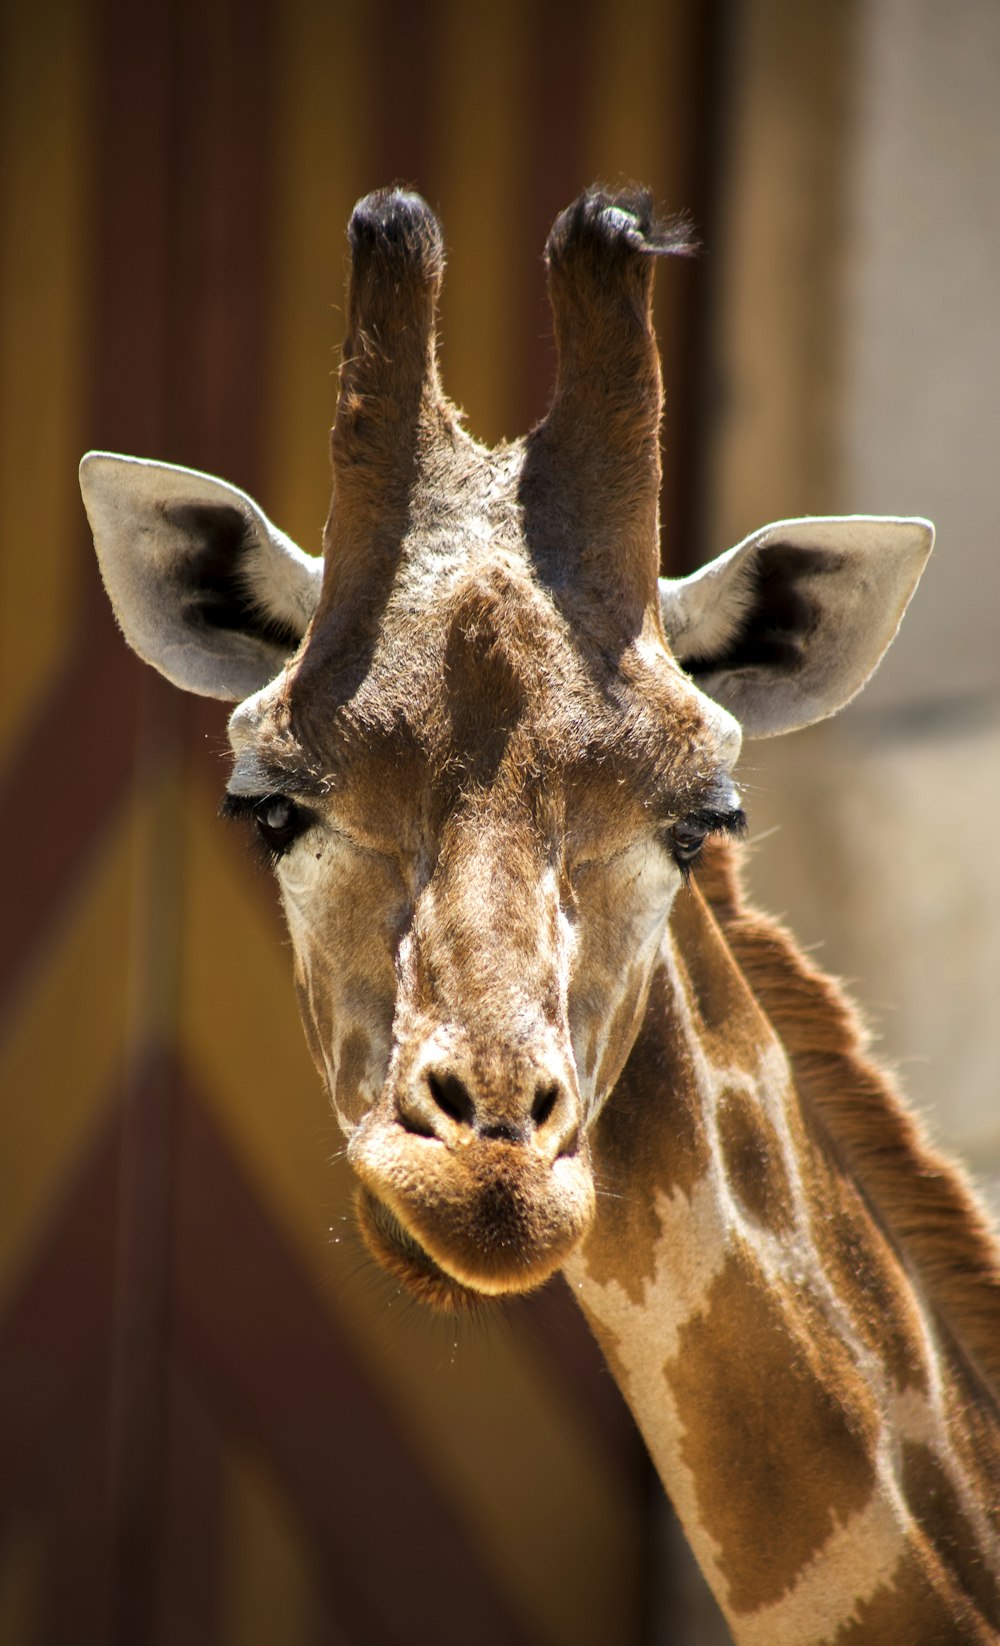 fotografia em close-up da girafa durante o dia